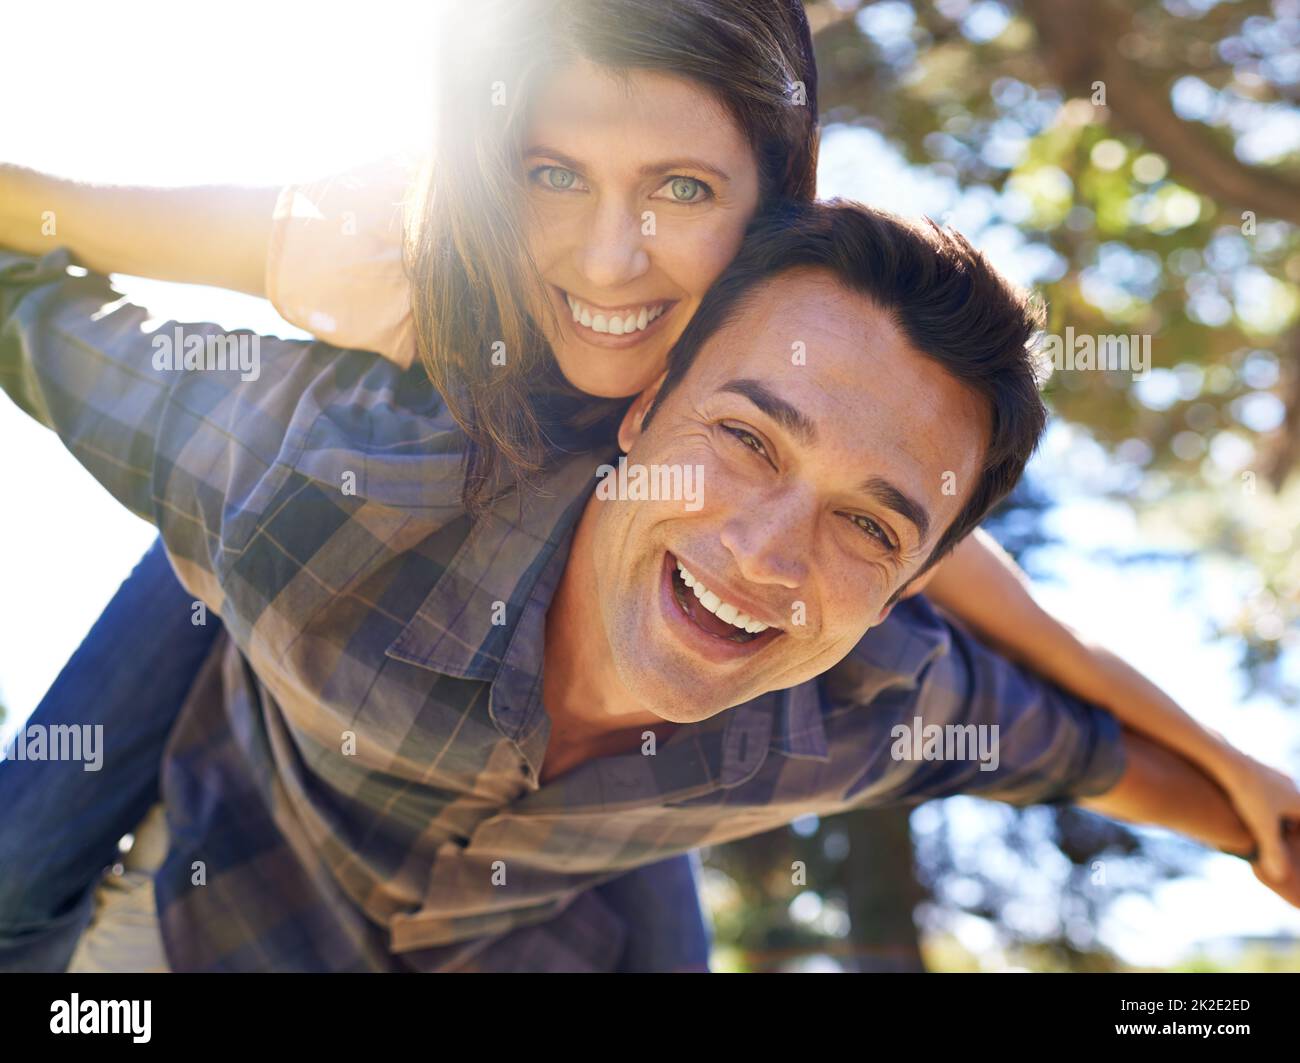 Verspielt und verliebt. Aufnahme eines Mannes, der seinen Partner auf dem Rücken im Park trägt. Stockfoto